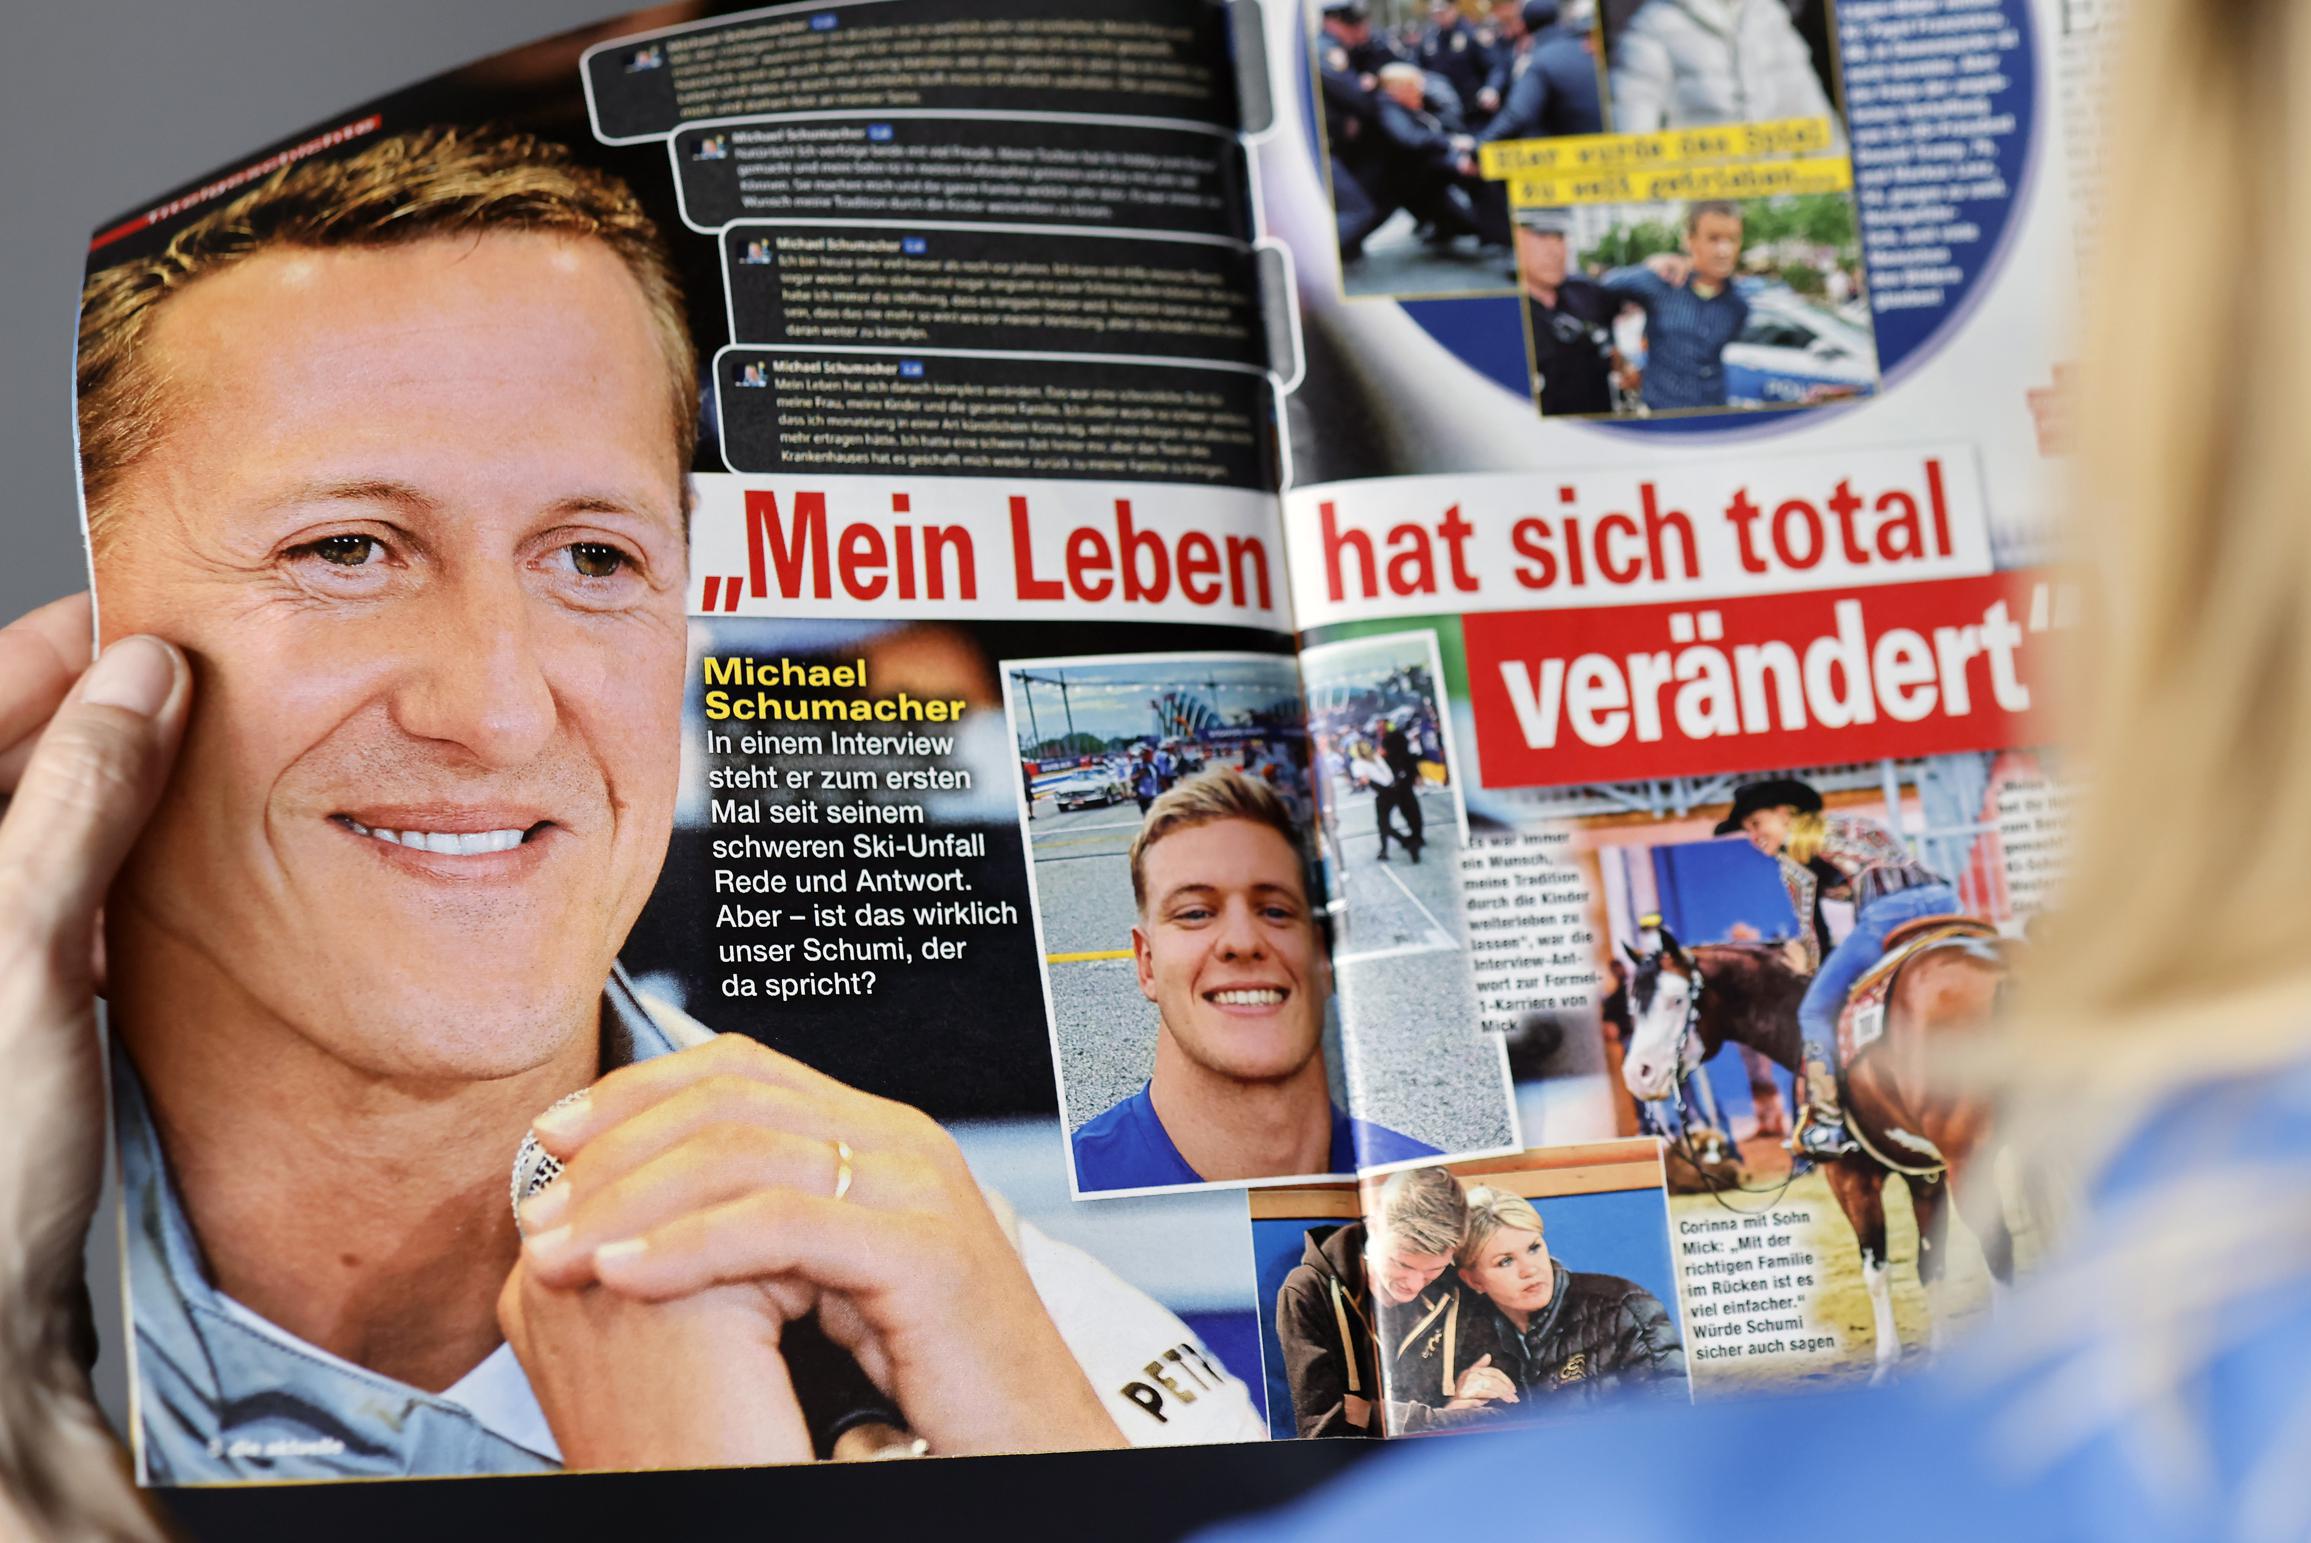 Waarom het al tien jaar stil blijft rond Michael Schumacher